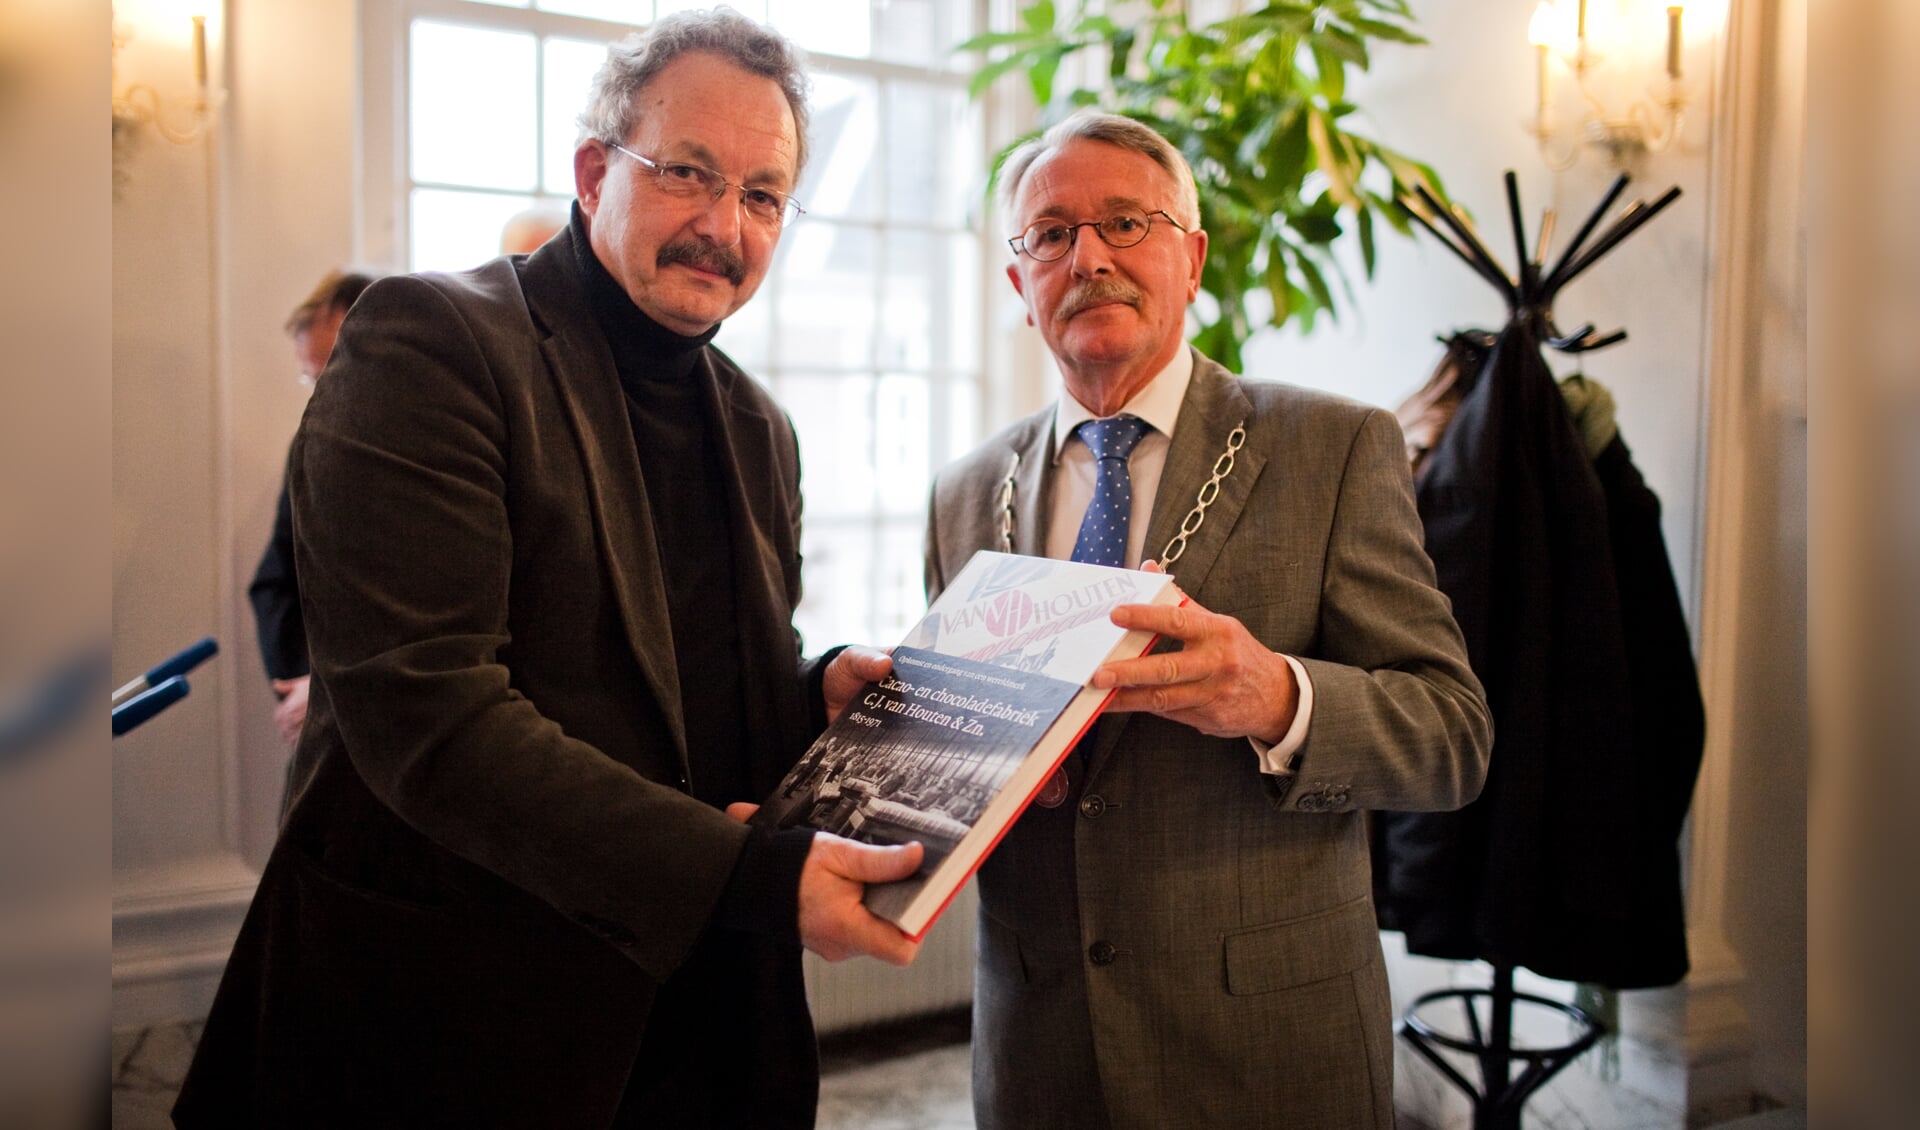 Burgemeester Horseling krijgt speciaal exemplaar van boek